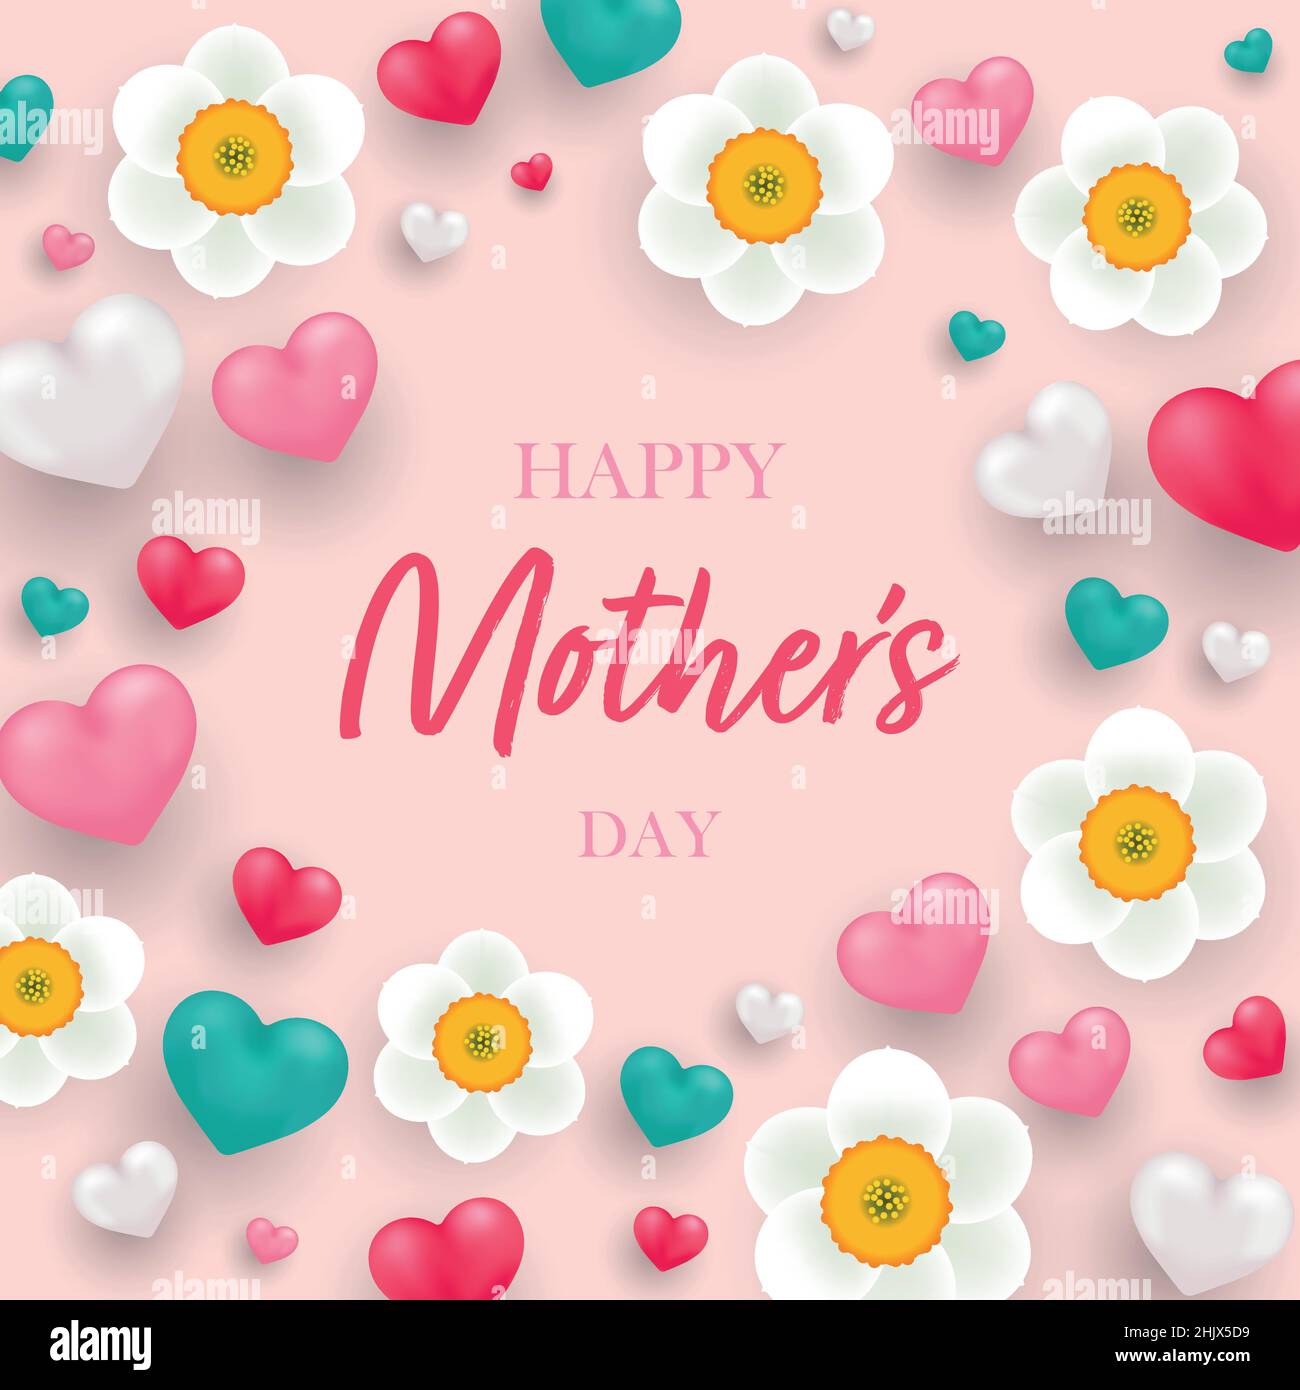 Glückwunschkarte zum Muttertag mit realistischen 3D Herzen und Narzissblüten. Vektor-isolierte Illustration Stock Vektor